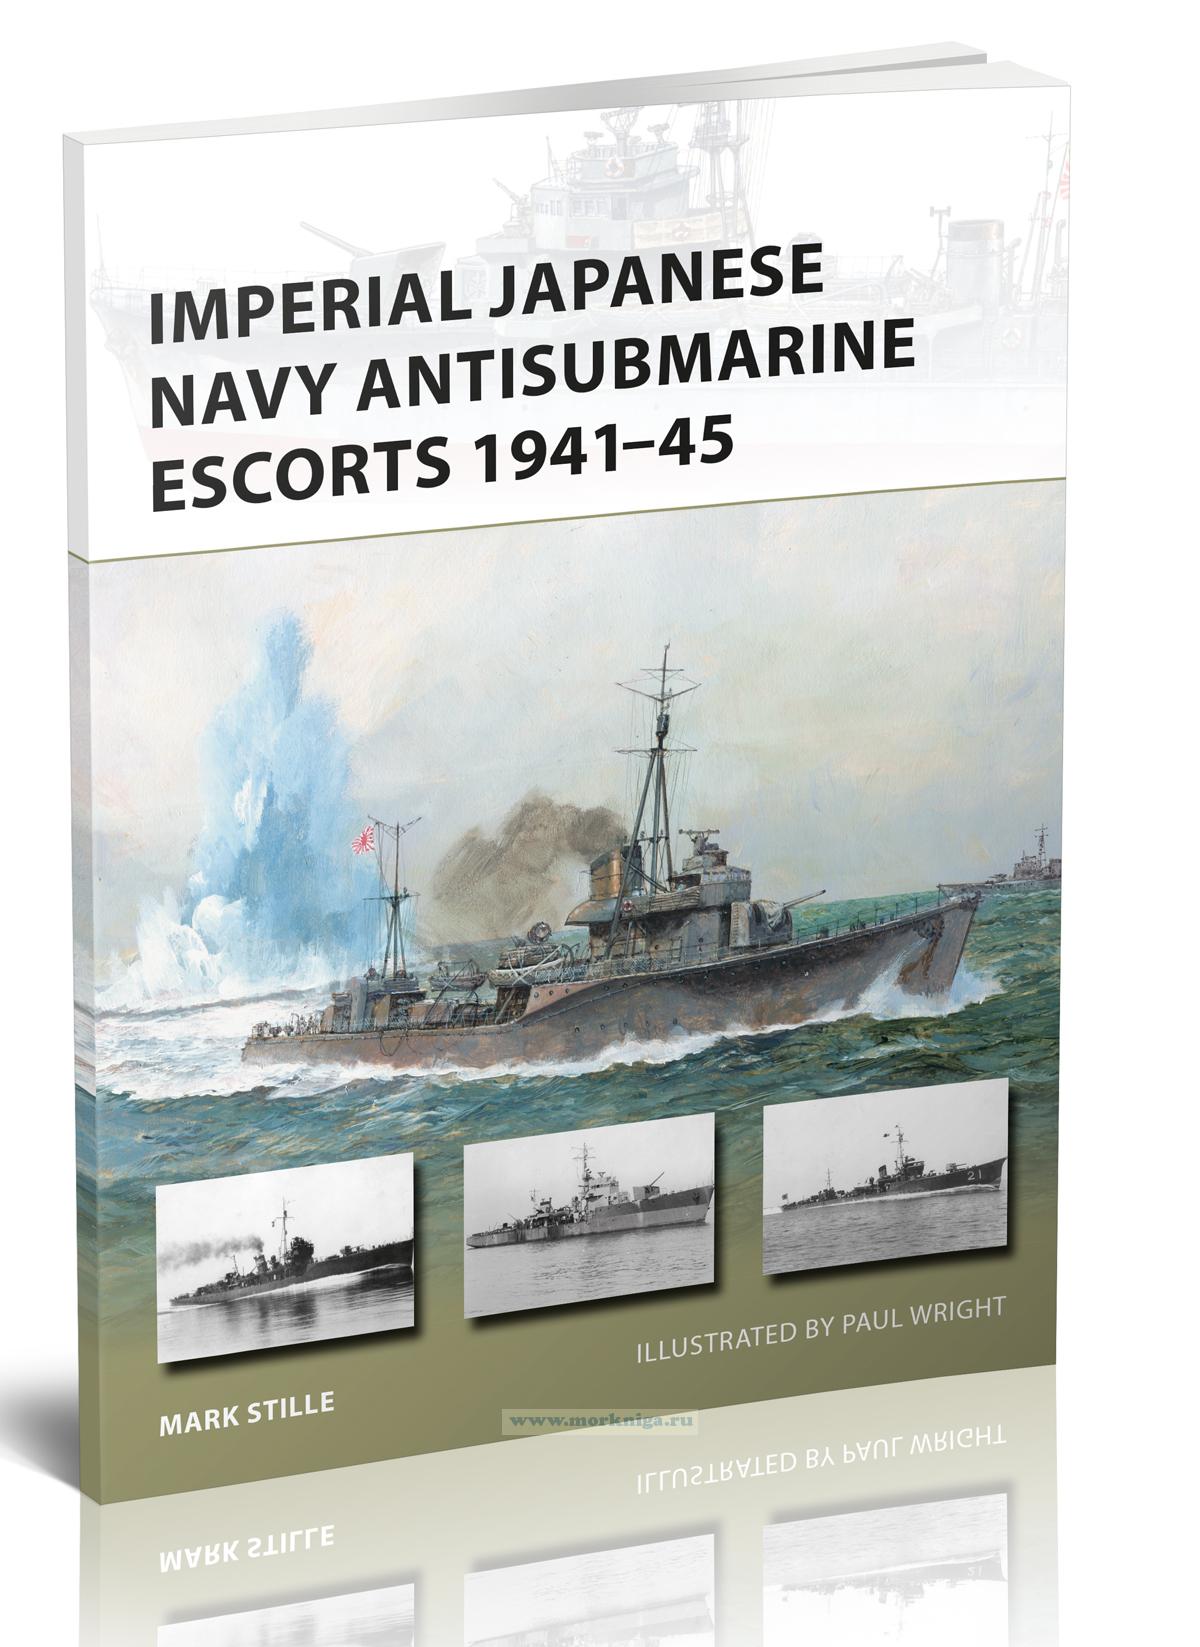 Imperial Japanese Navy Antisubmarine escorts 1941-45/Противолодочные эскорты Императорского флота Японии 1941-45 гг.